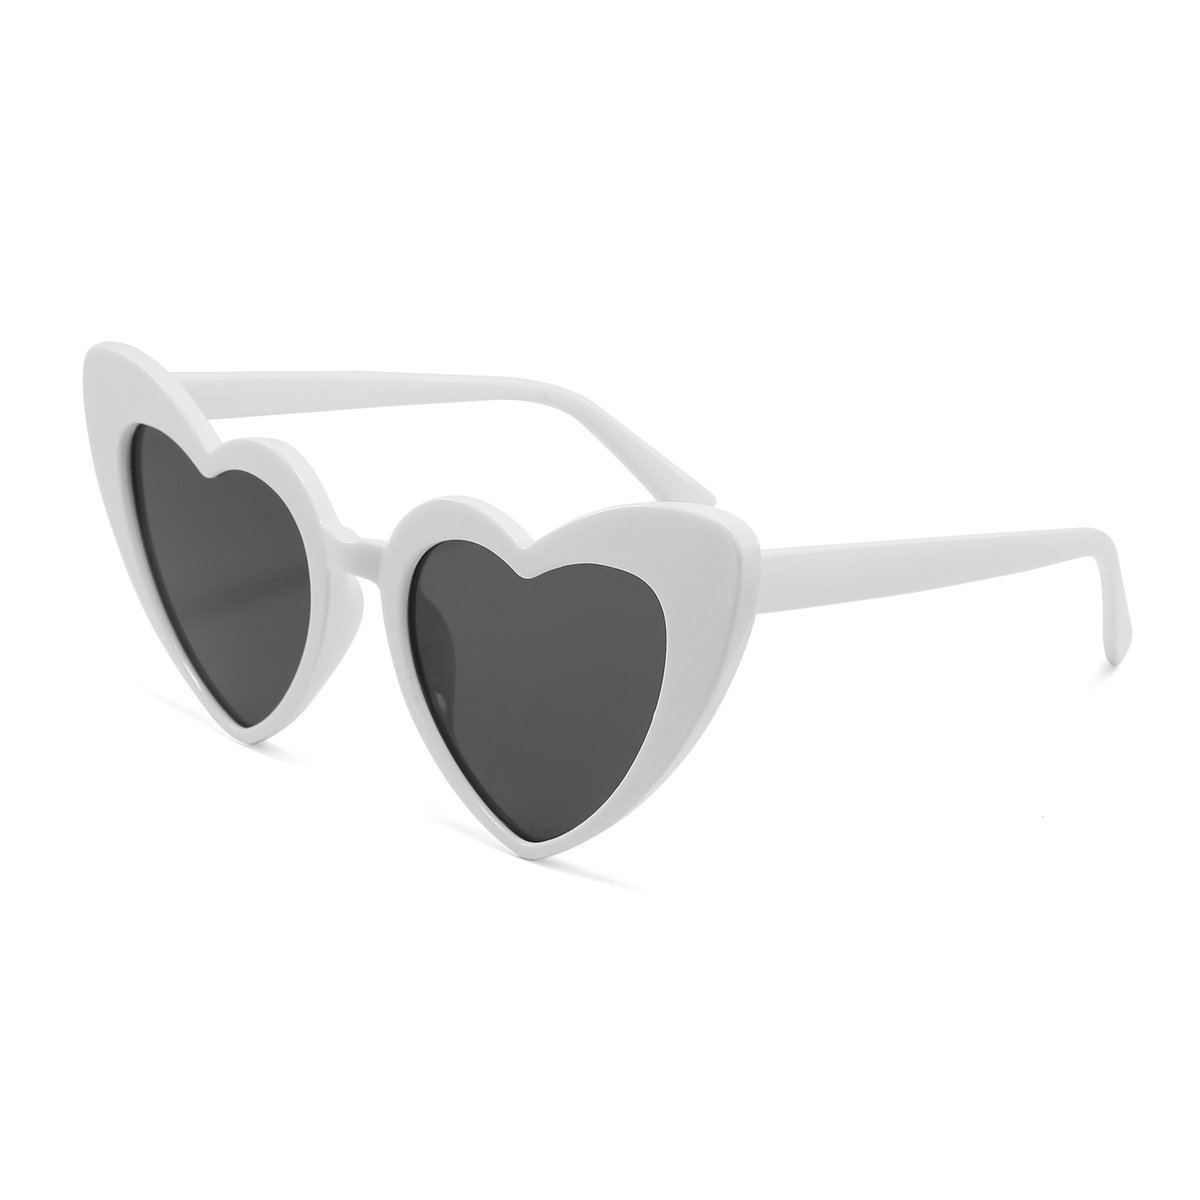 DAEBAK Witte vrouwen zonnebril in hart vorm [Zwart wit] met hartjes zonnebrillen Dames Festival Sunglasses